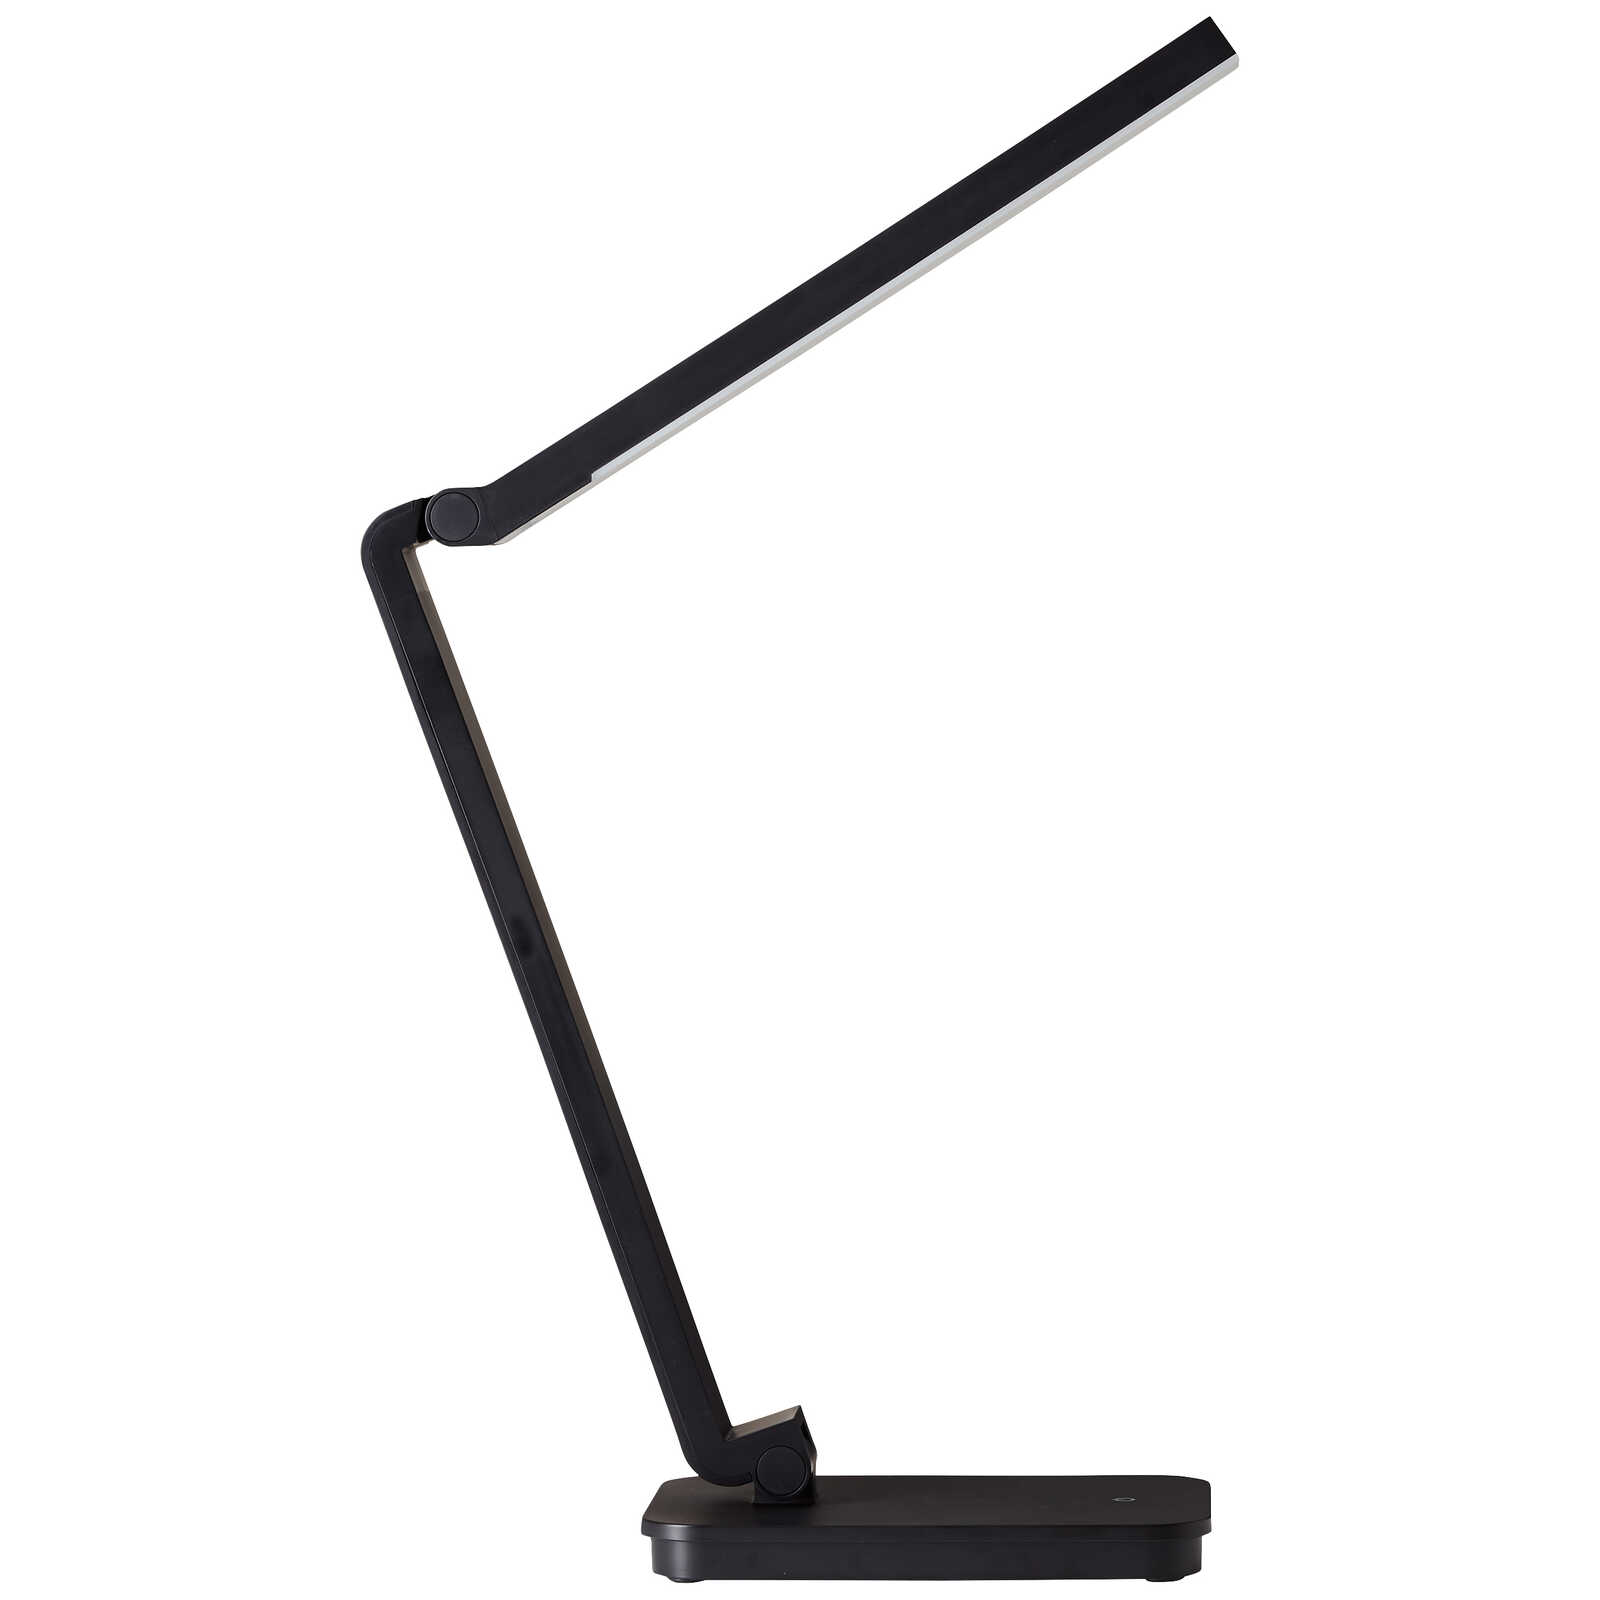             Kunststof tafellamp - Romy 2 - Zwart
        